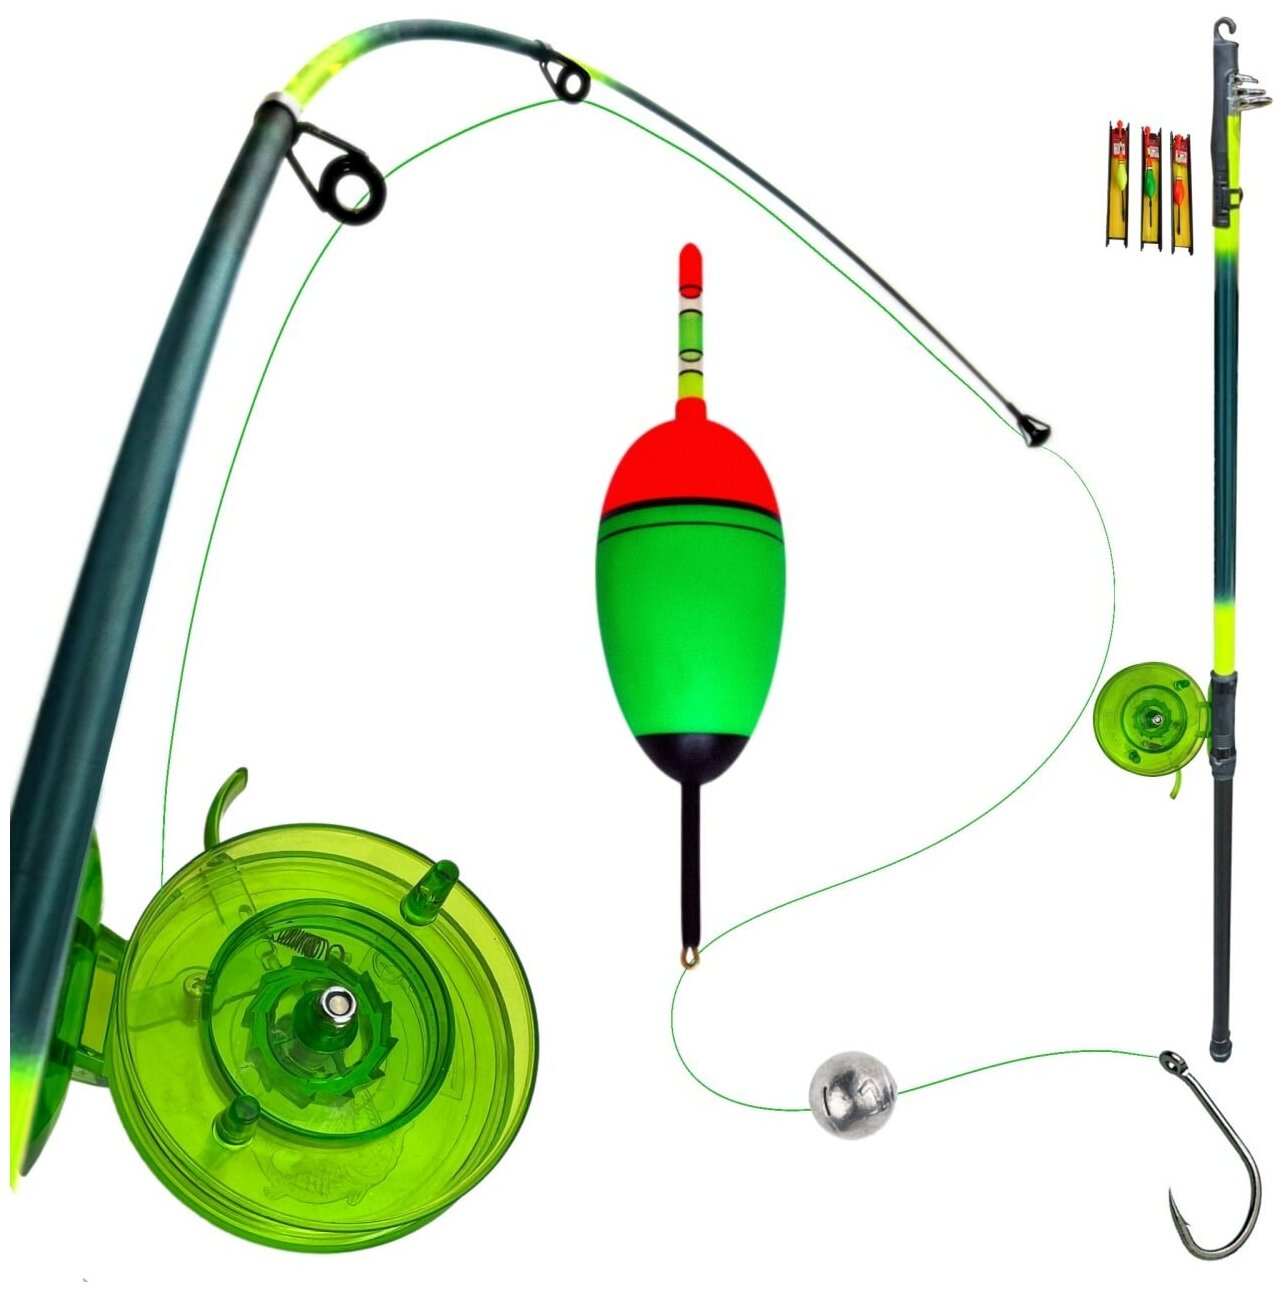 Удочка для ловли на поплавок с набором оснаски телескопическая зеленая 5 м. Набор удочка и оснастка.